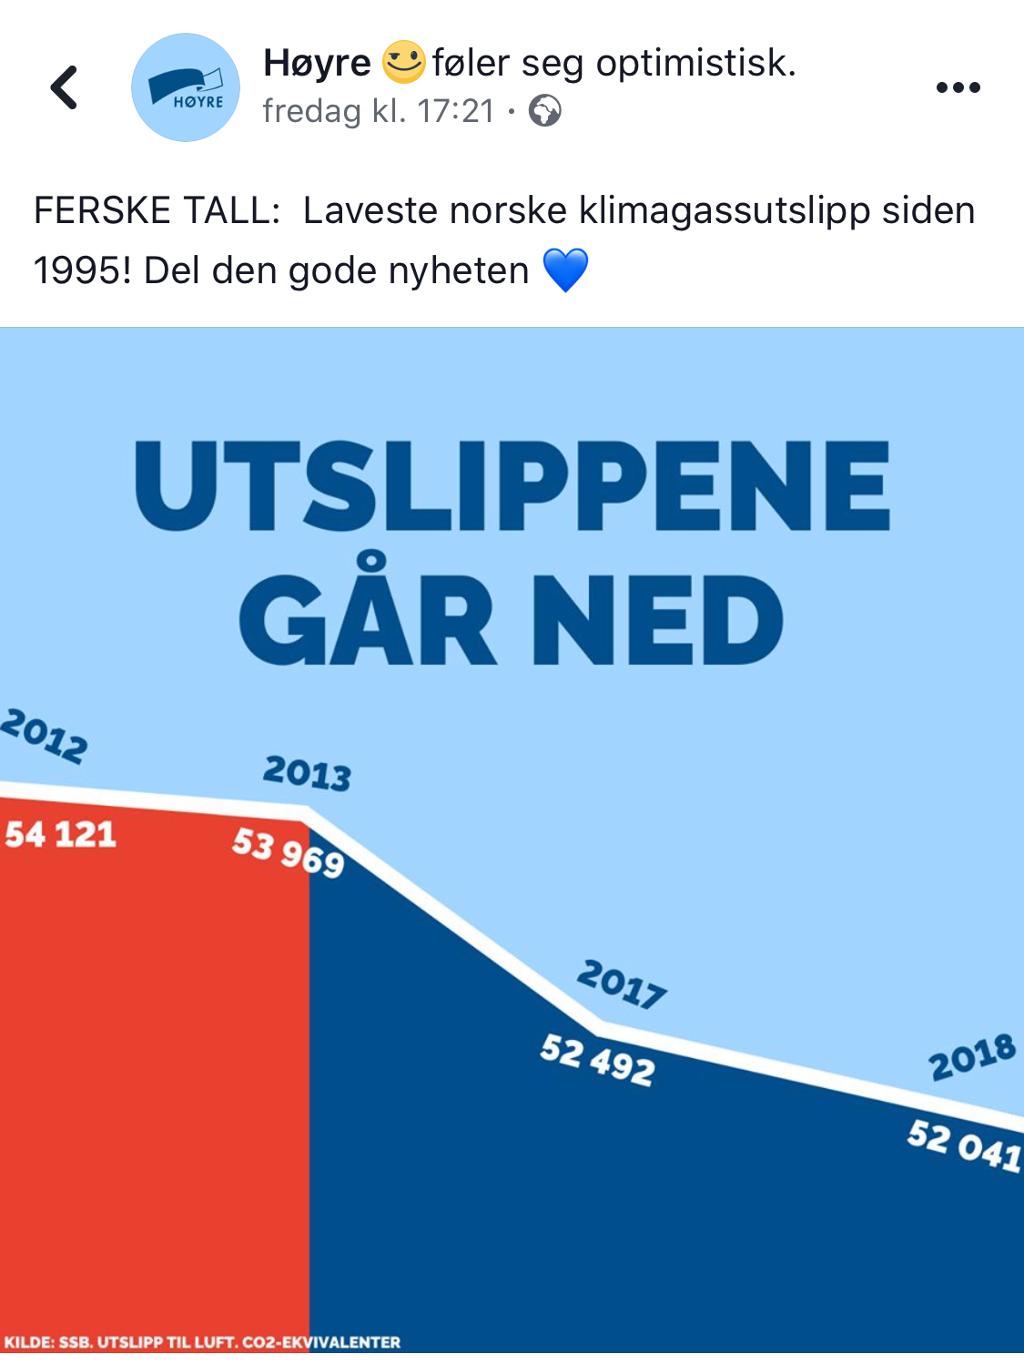 Linjediagram som viser utviklinga i klimagassutslepp i 2012, 2013, 2017 og 2018. Facebook-innlegg frå Høgre med tittelen "Utslippene går ned". Grafikk.